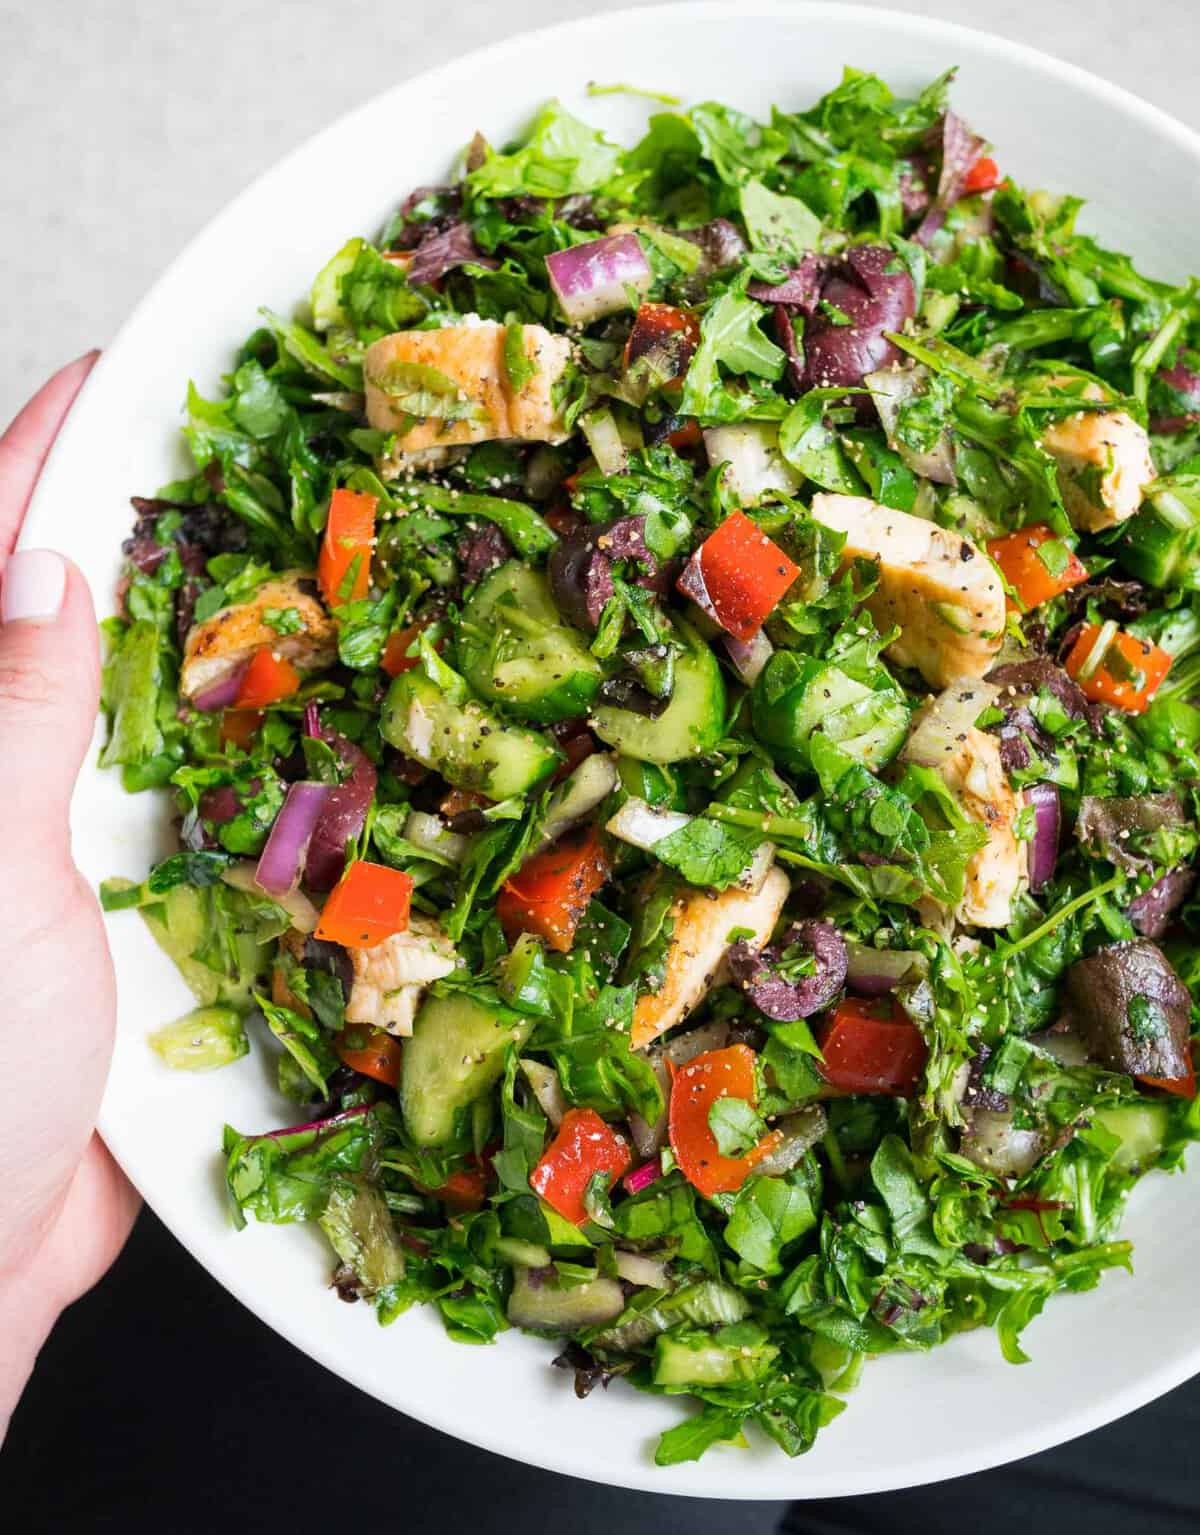 Quick Basic Chopped Salad